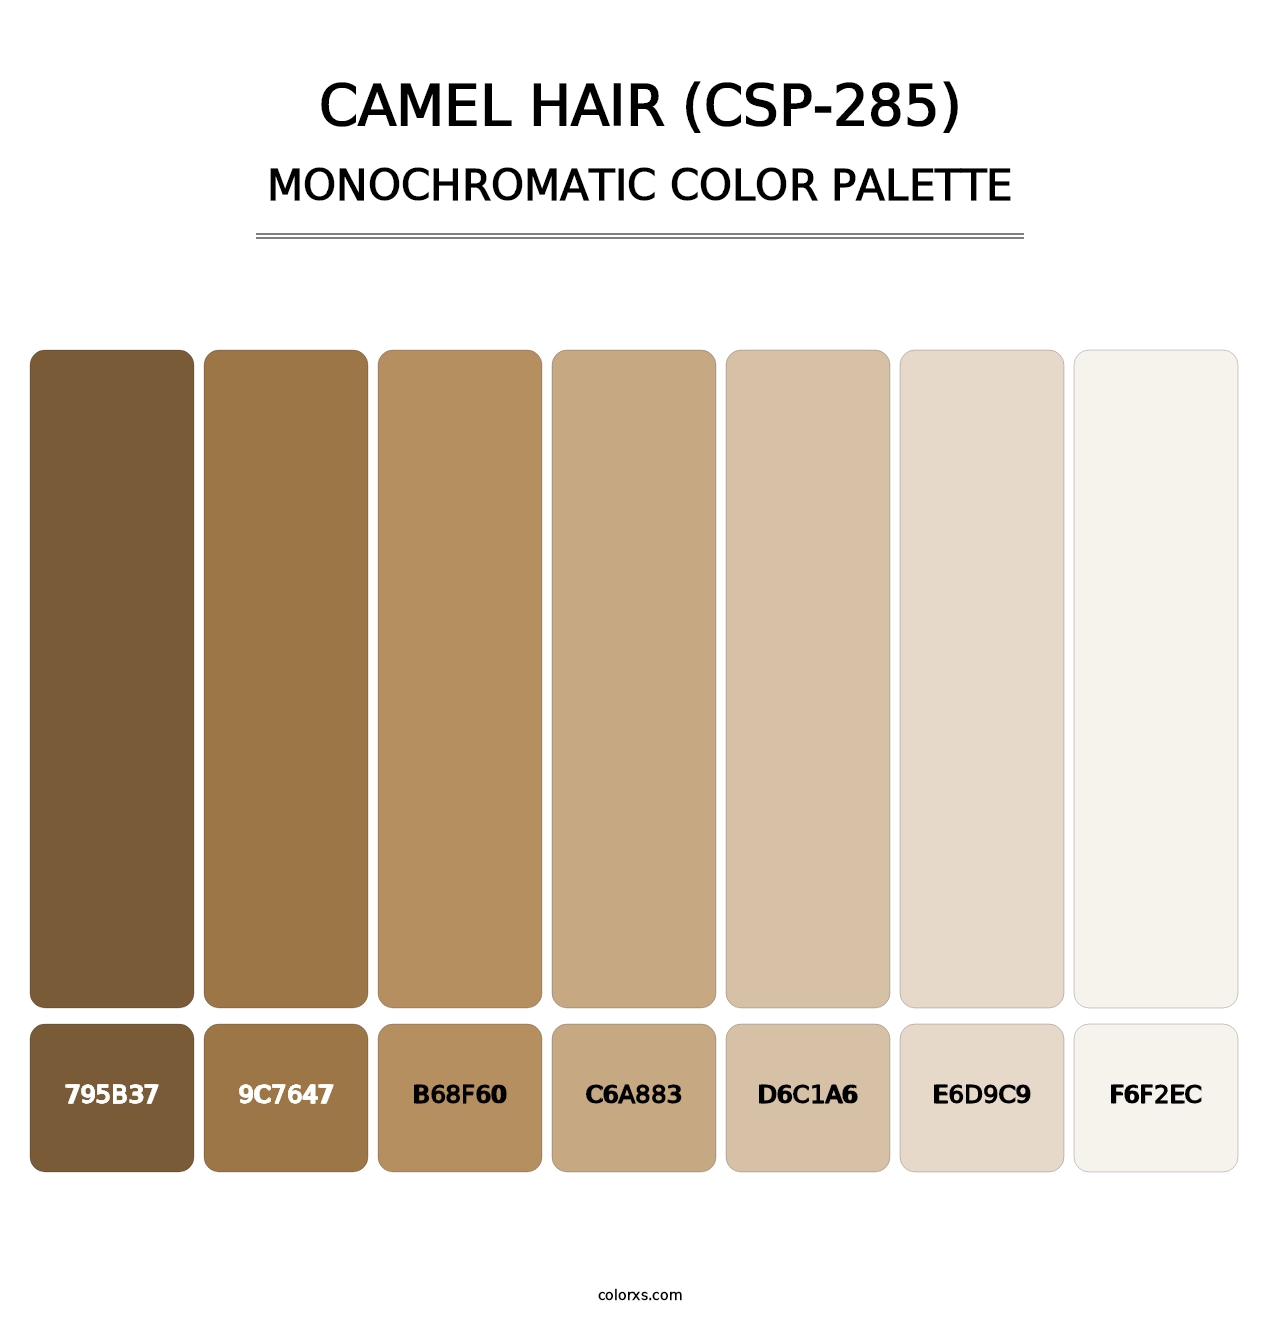 Camel Hair (CSP-285) - Monochromatic Color Palette